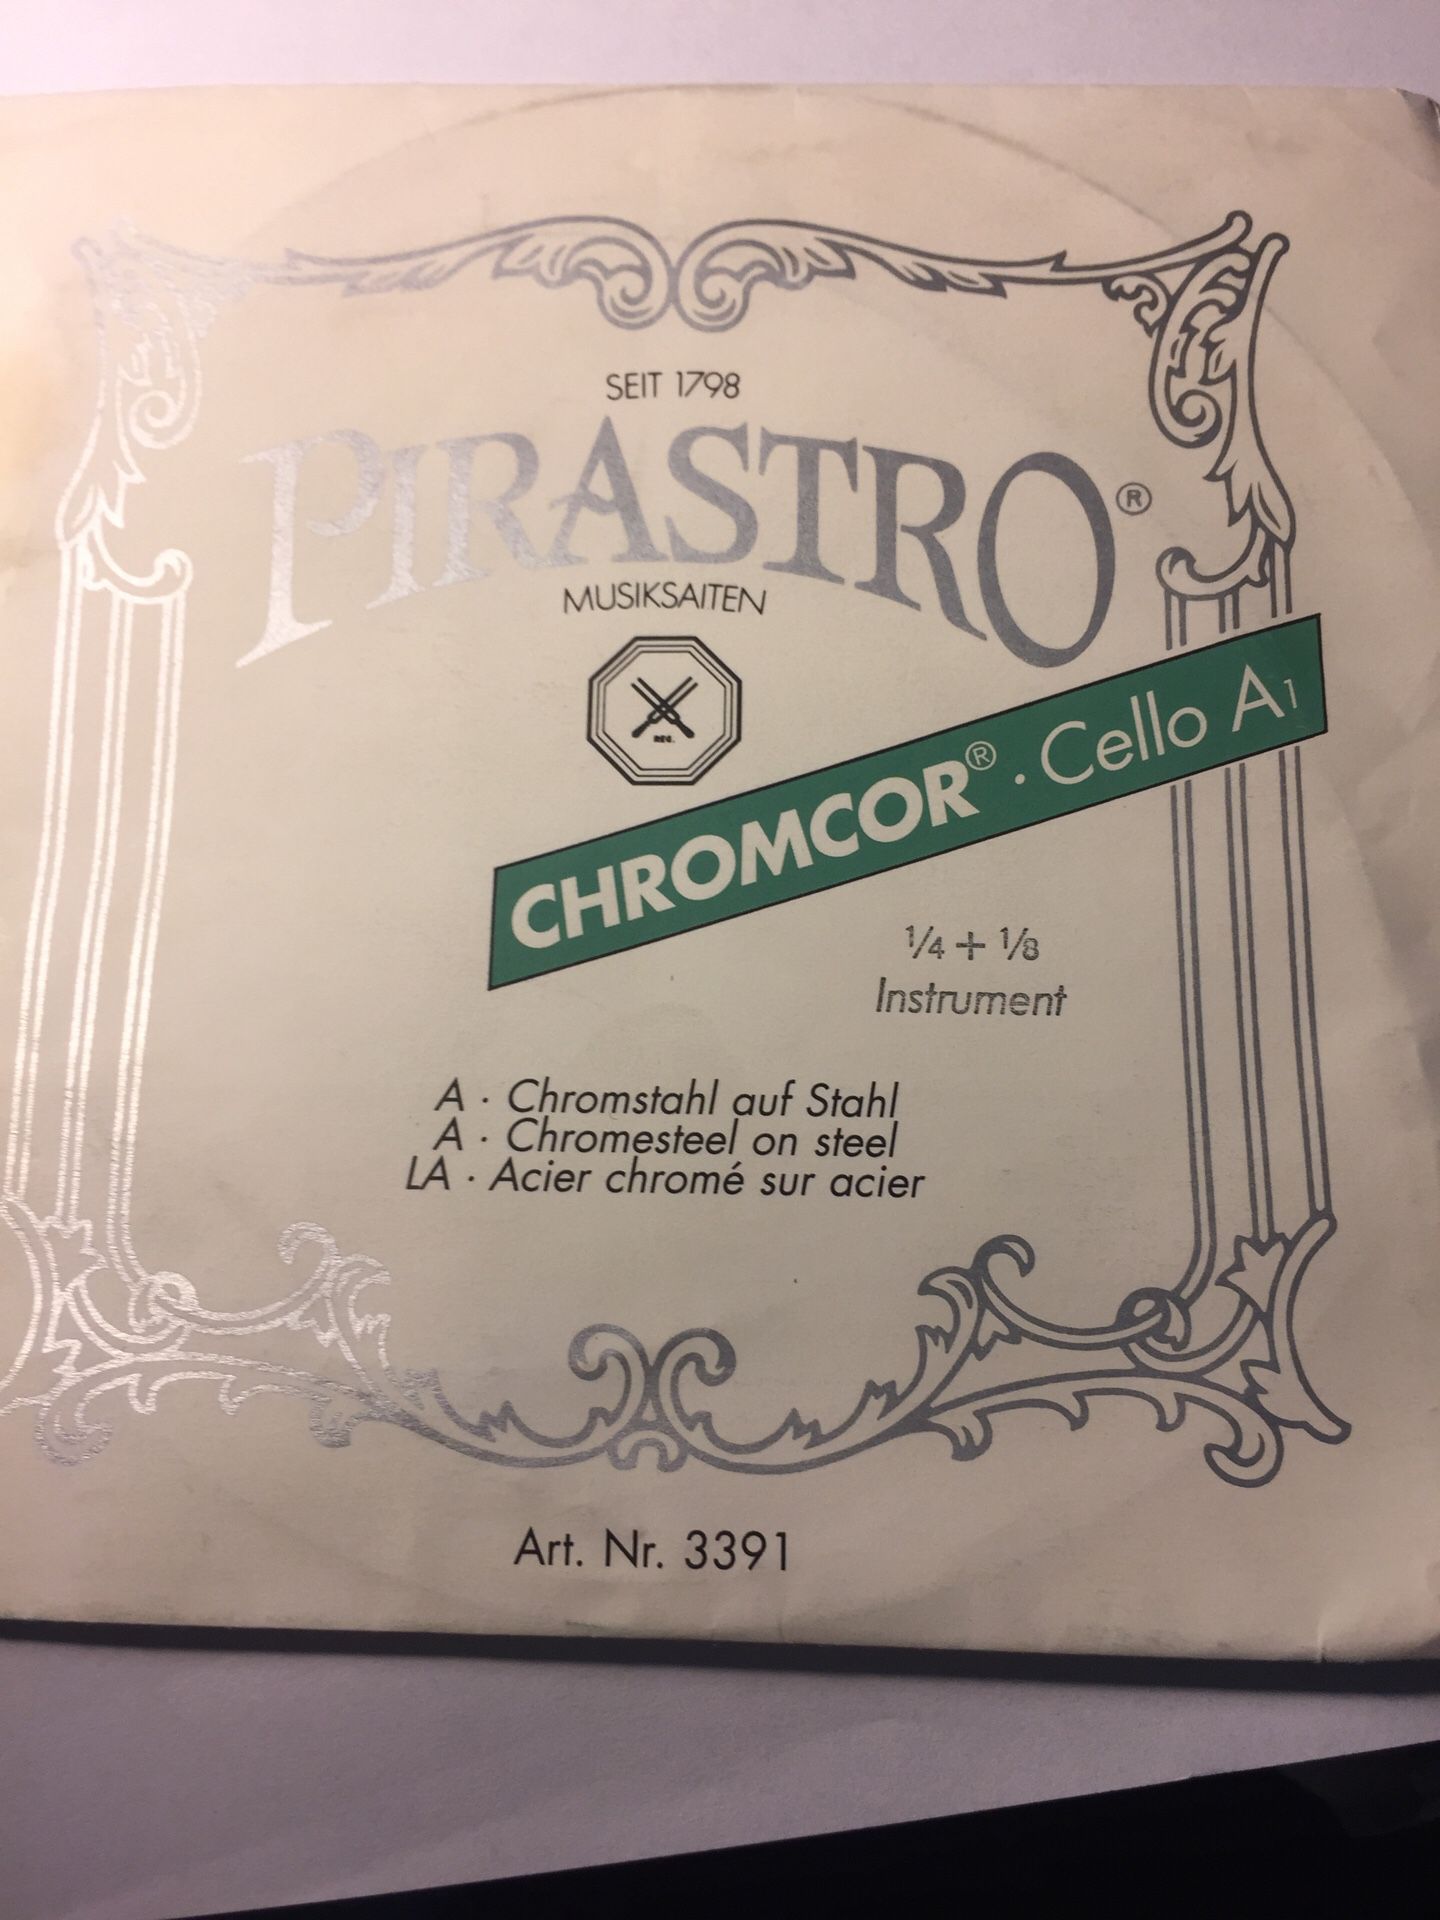 Pirastro Chromcor Cello A 1/4 - 1/8 String